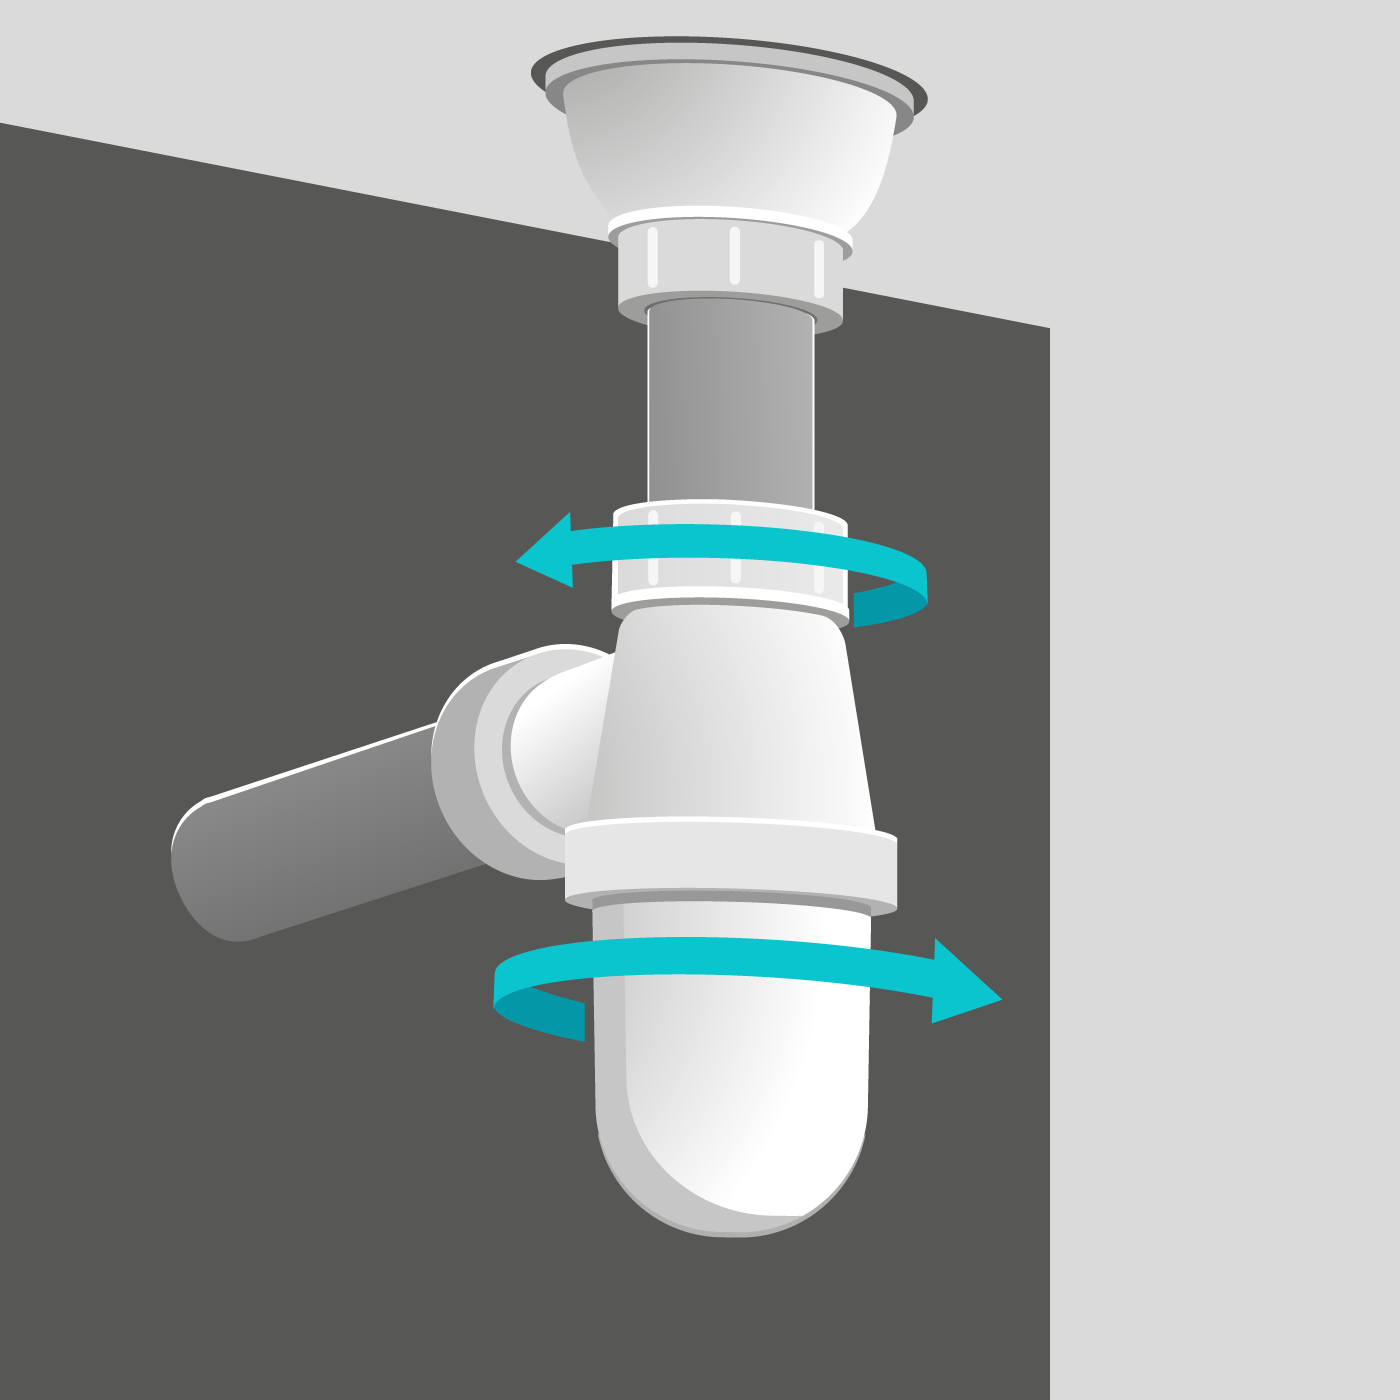 Guide Plomberie - Eléments sanitaires de canalisations: siphon, bonde, joint  de plomberie